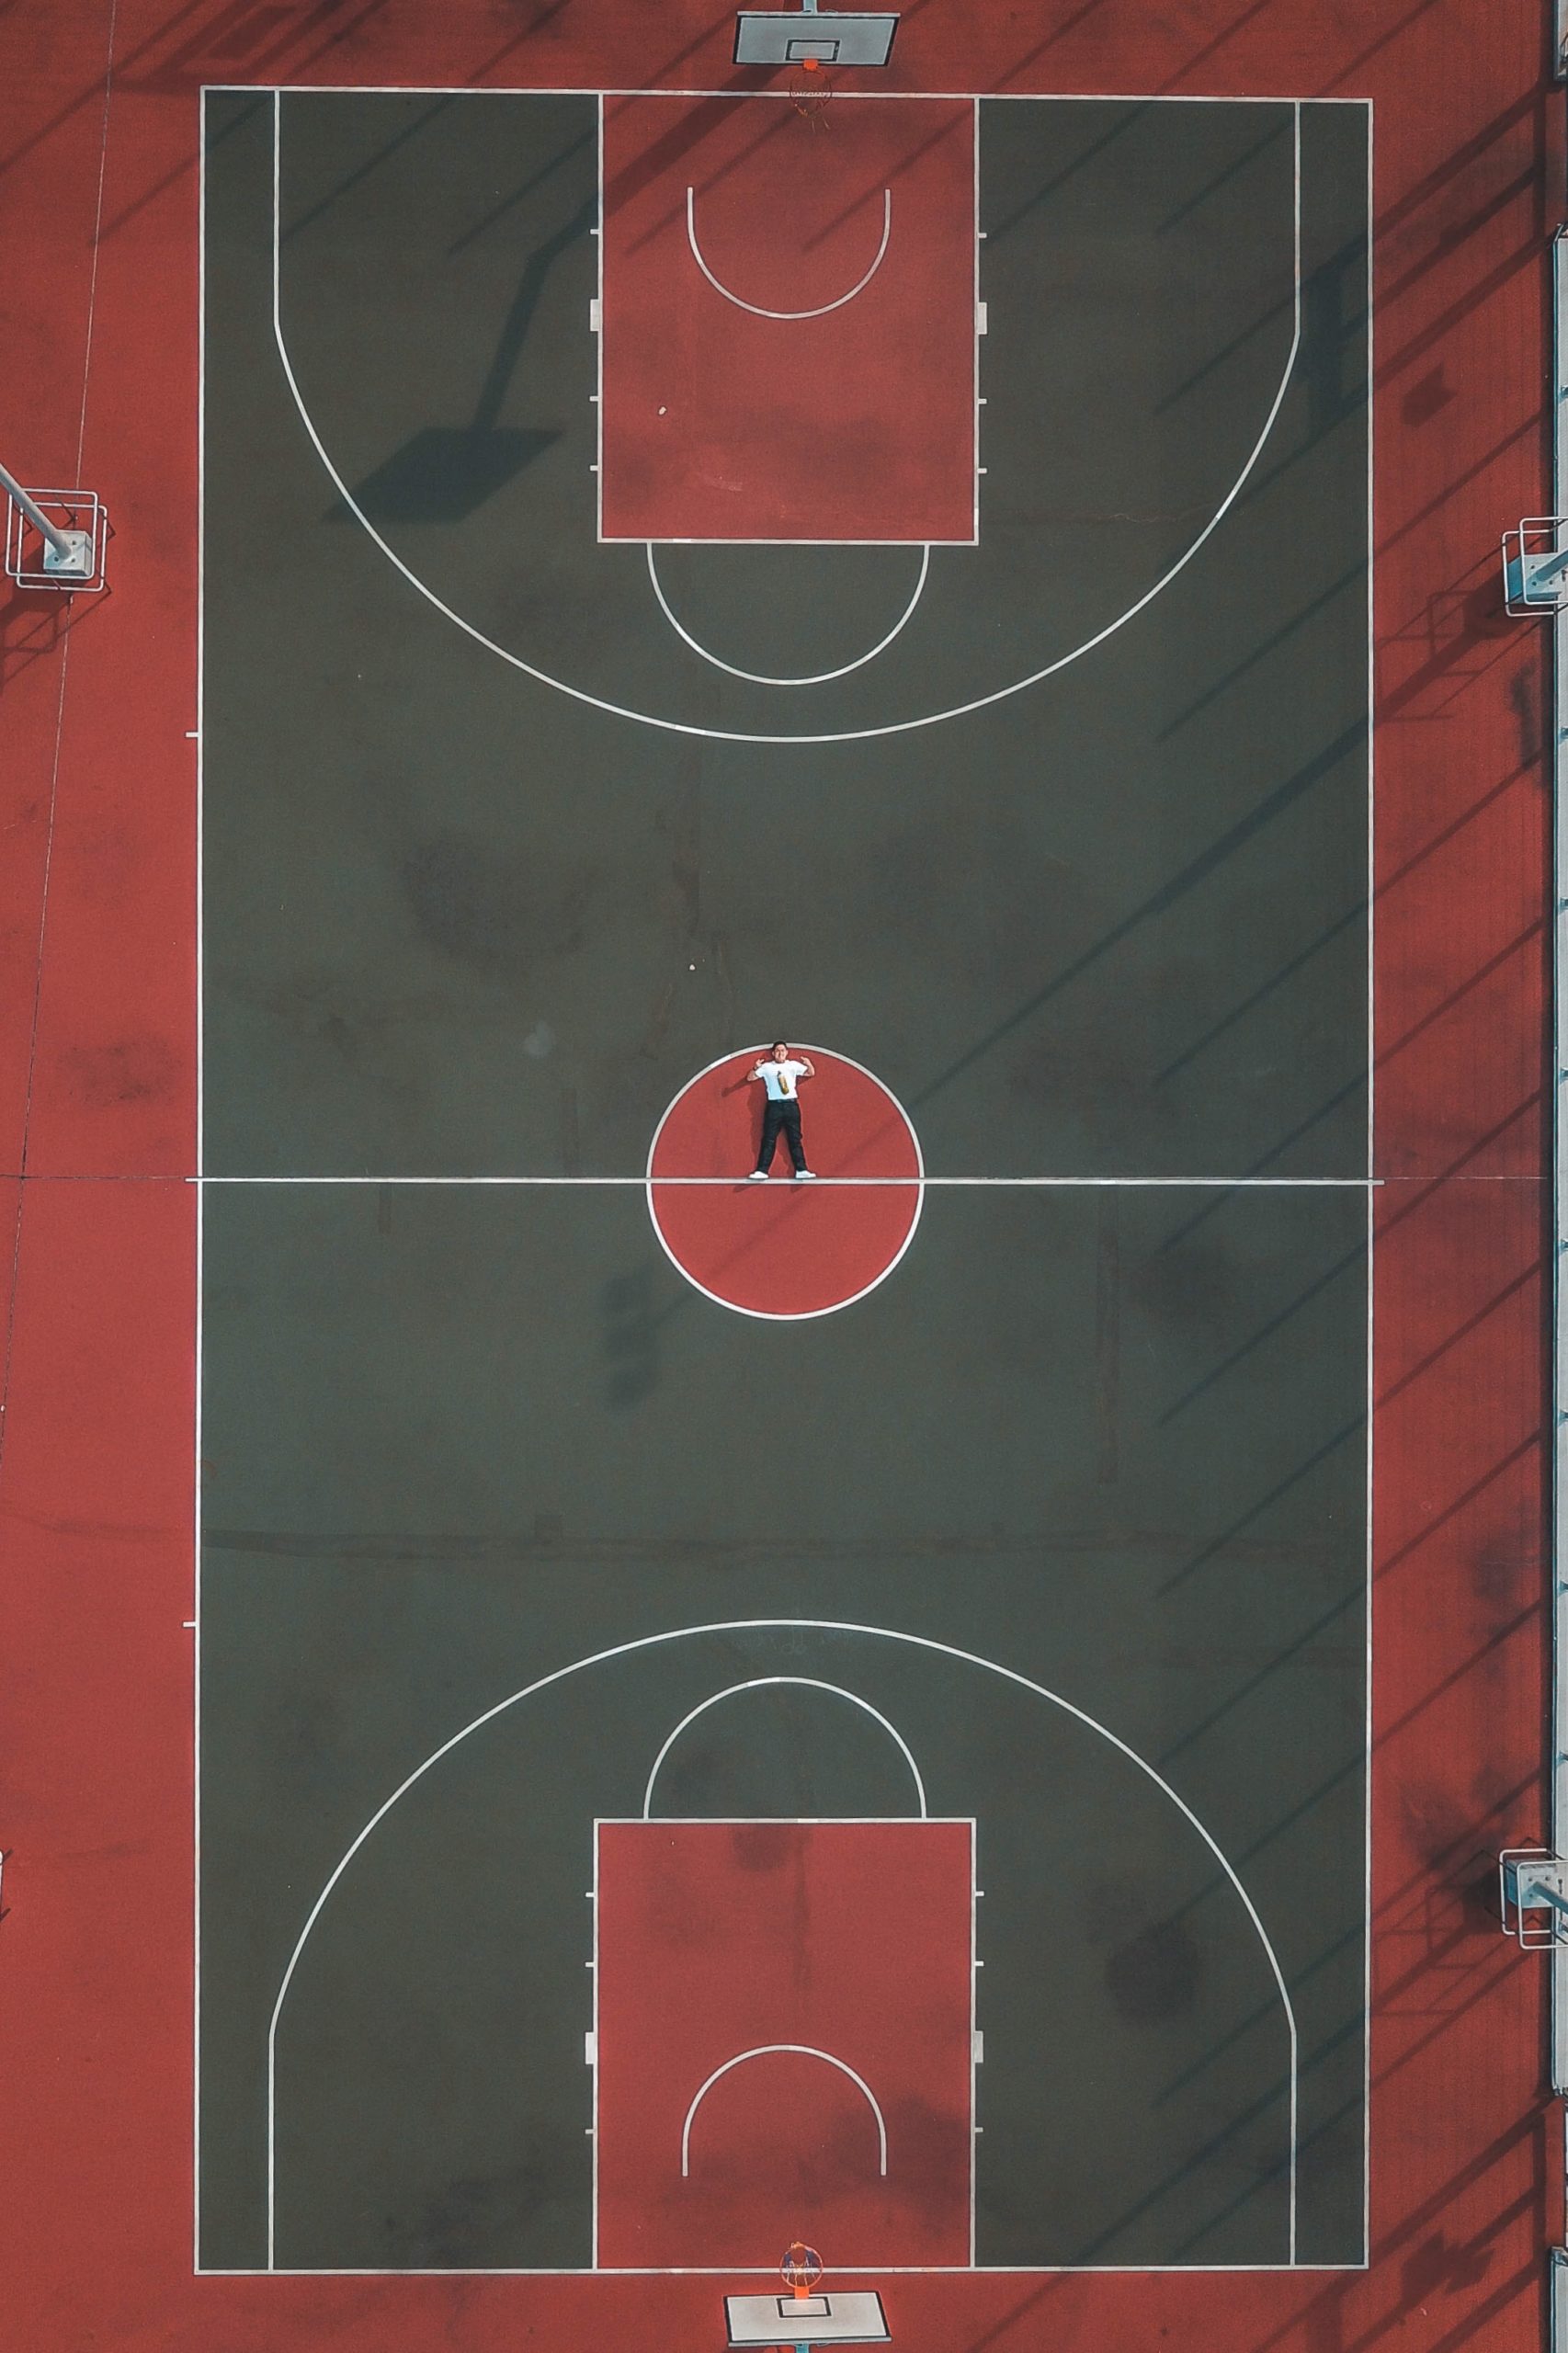 фото баскетбольной площадки сверху